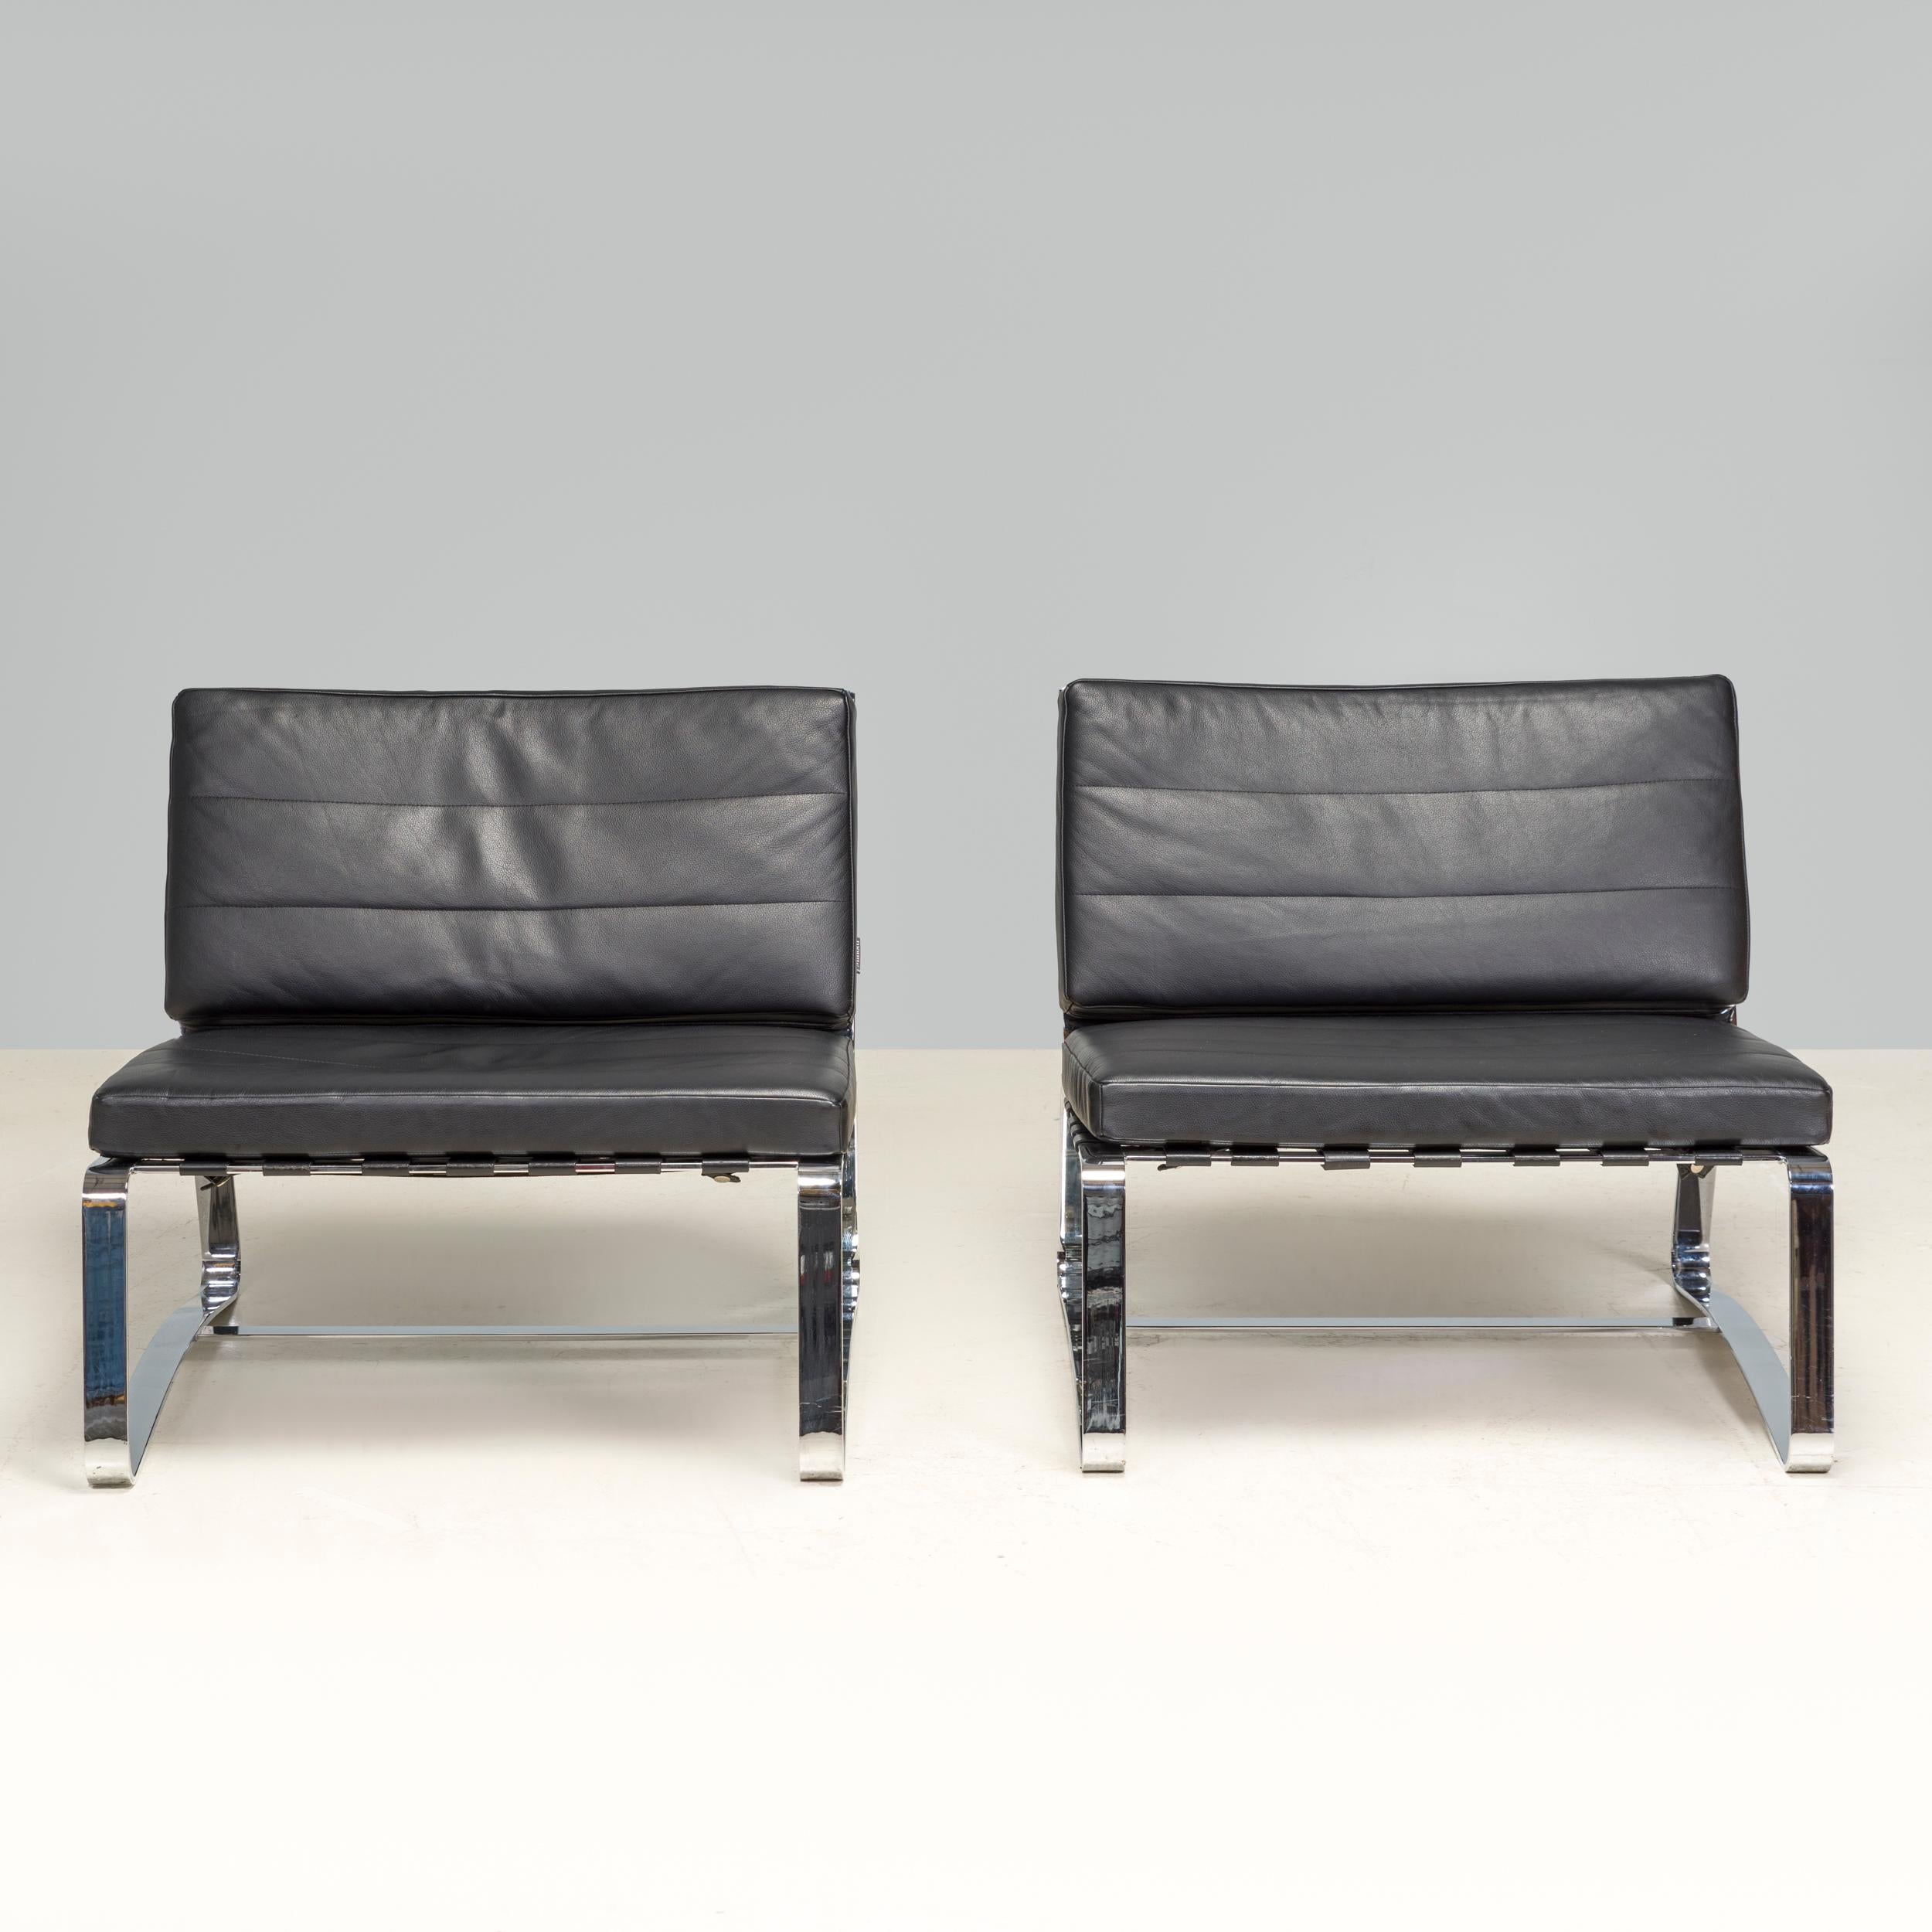 Der 1998 von Rodolfo Dordoni entworfene und von Minotti hergestellte Delaunay Lounge Chair ist ein fantastisches Beispiel für das minimalistische Design der 90er Jahre.

Die Stühle bestehen aus einem verchromten Metallrahmen und stehen auf niedrigen